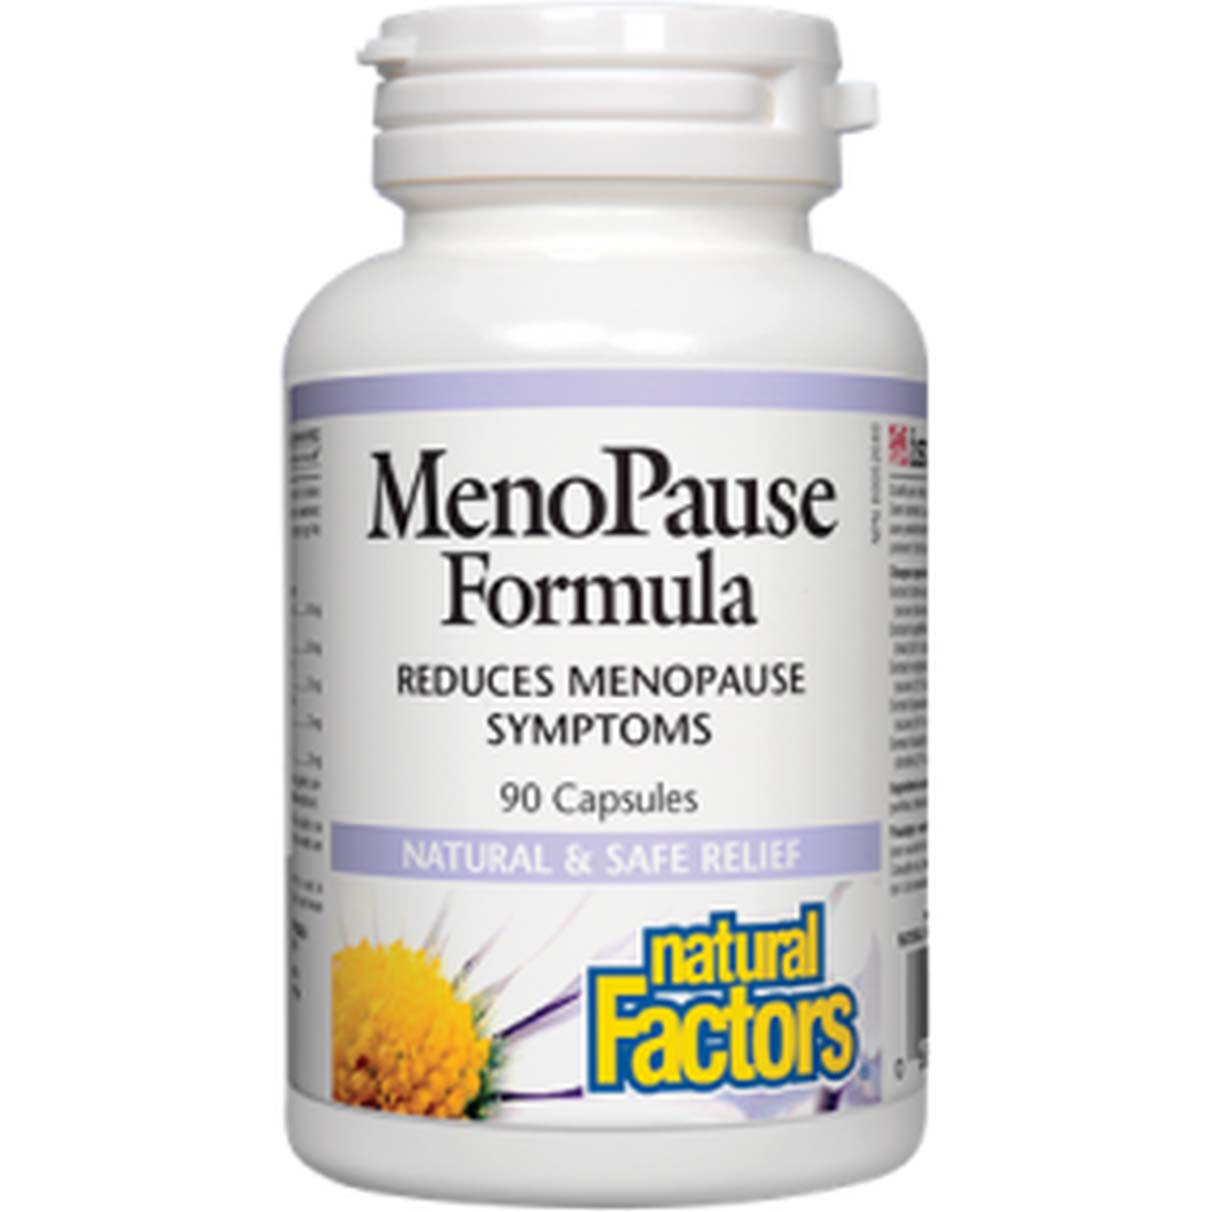 Natural Factors Menopause Formula, 90 Capsules